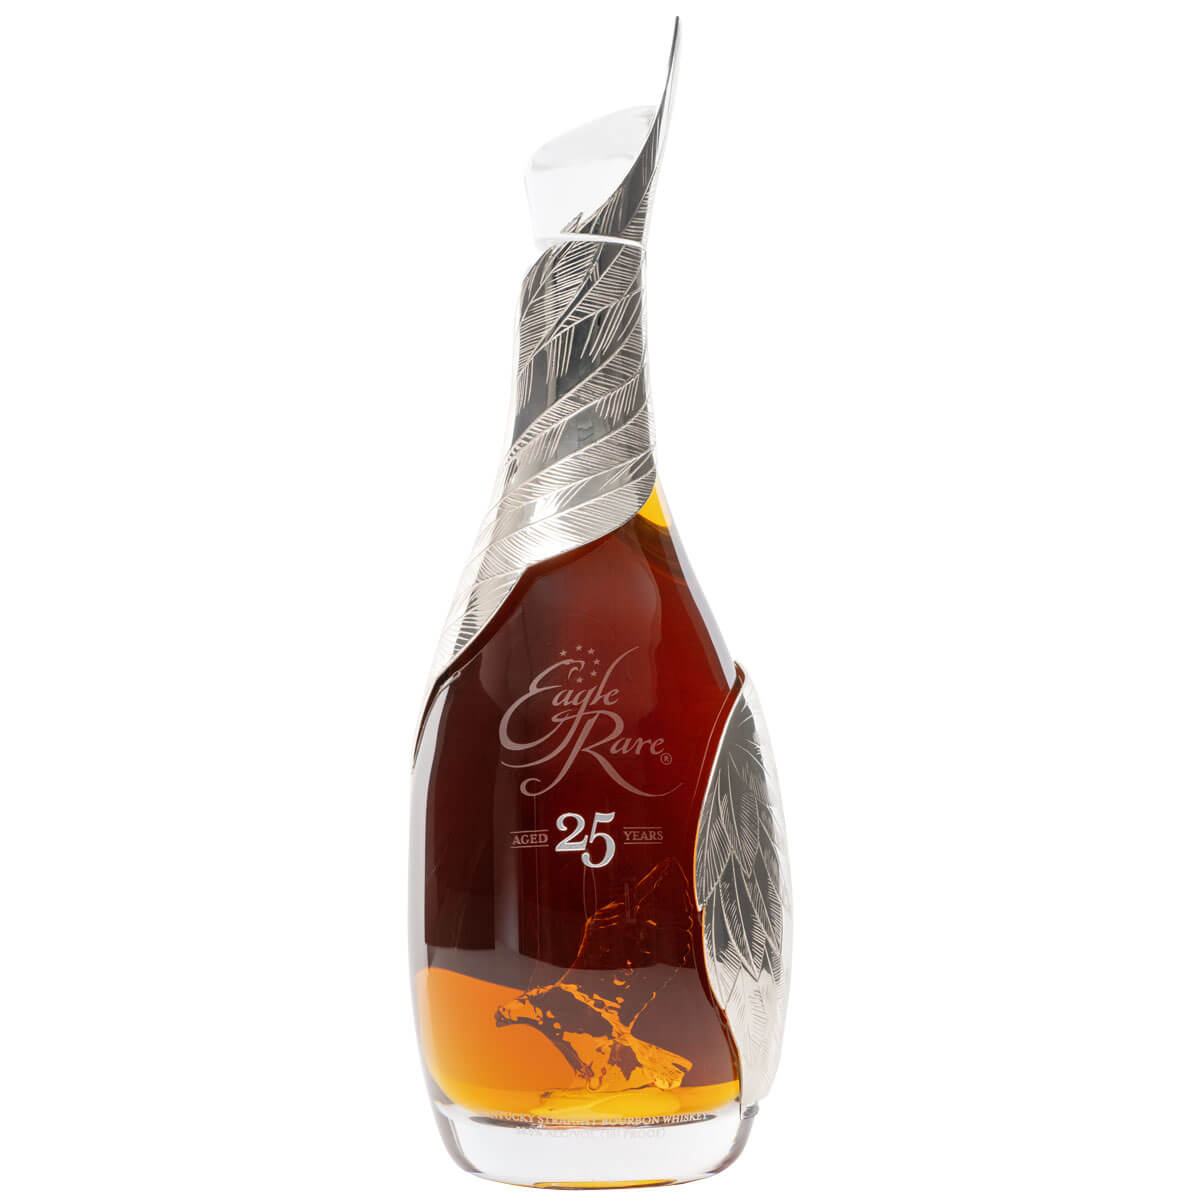 Eagle Rare 25 bottle